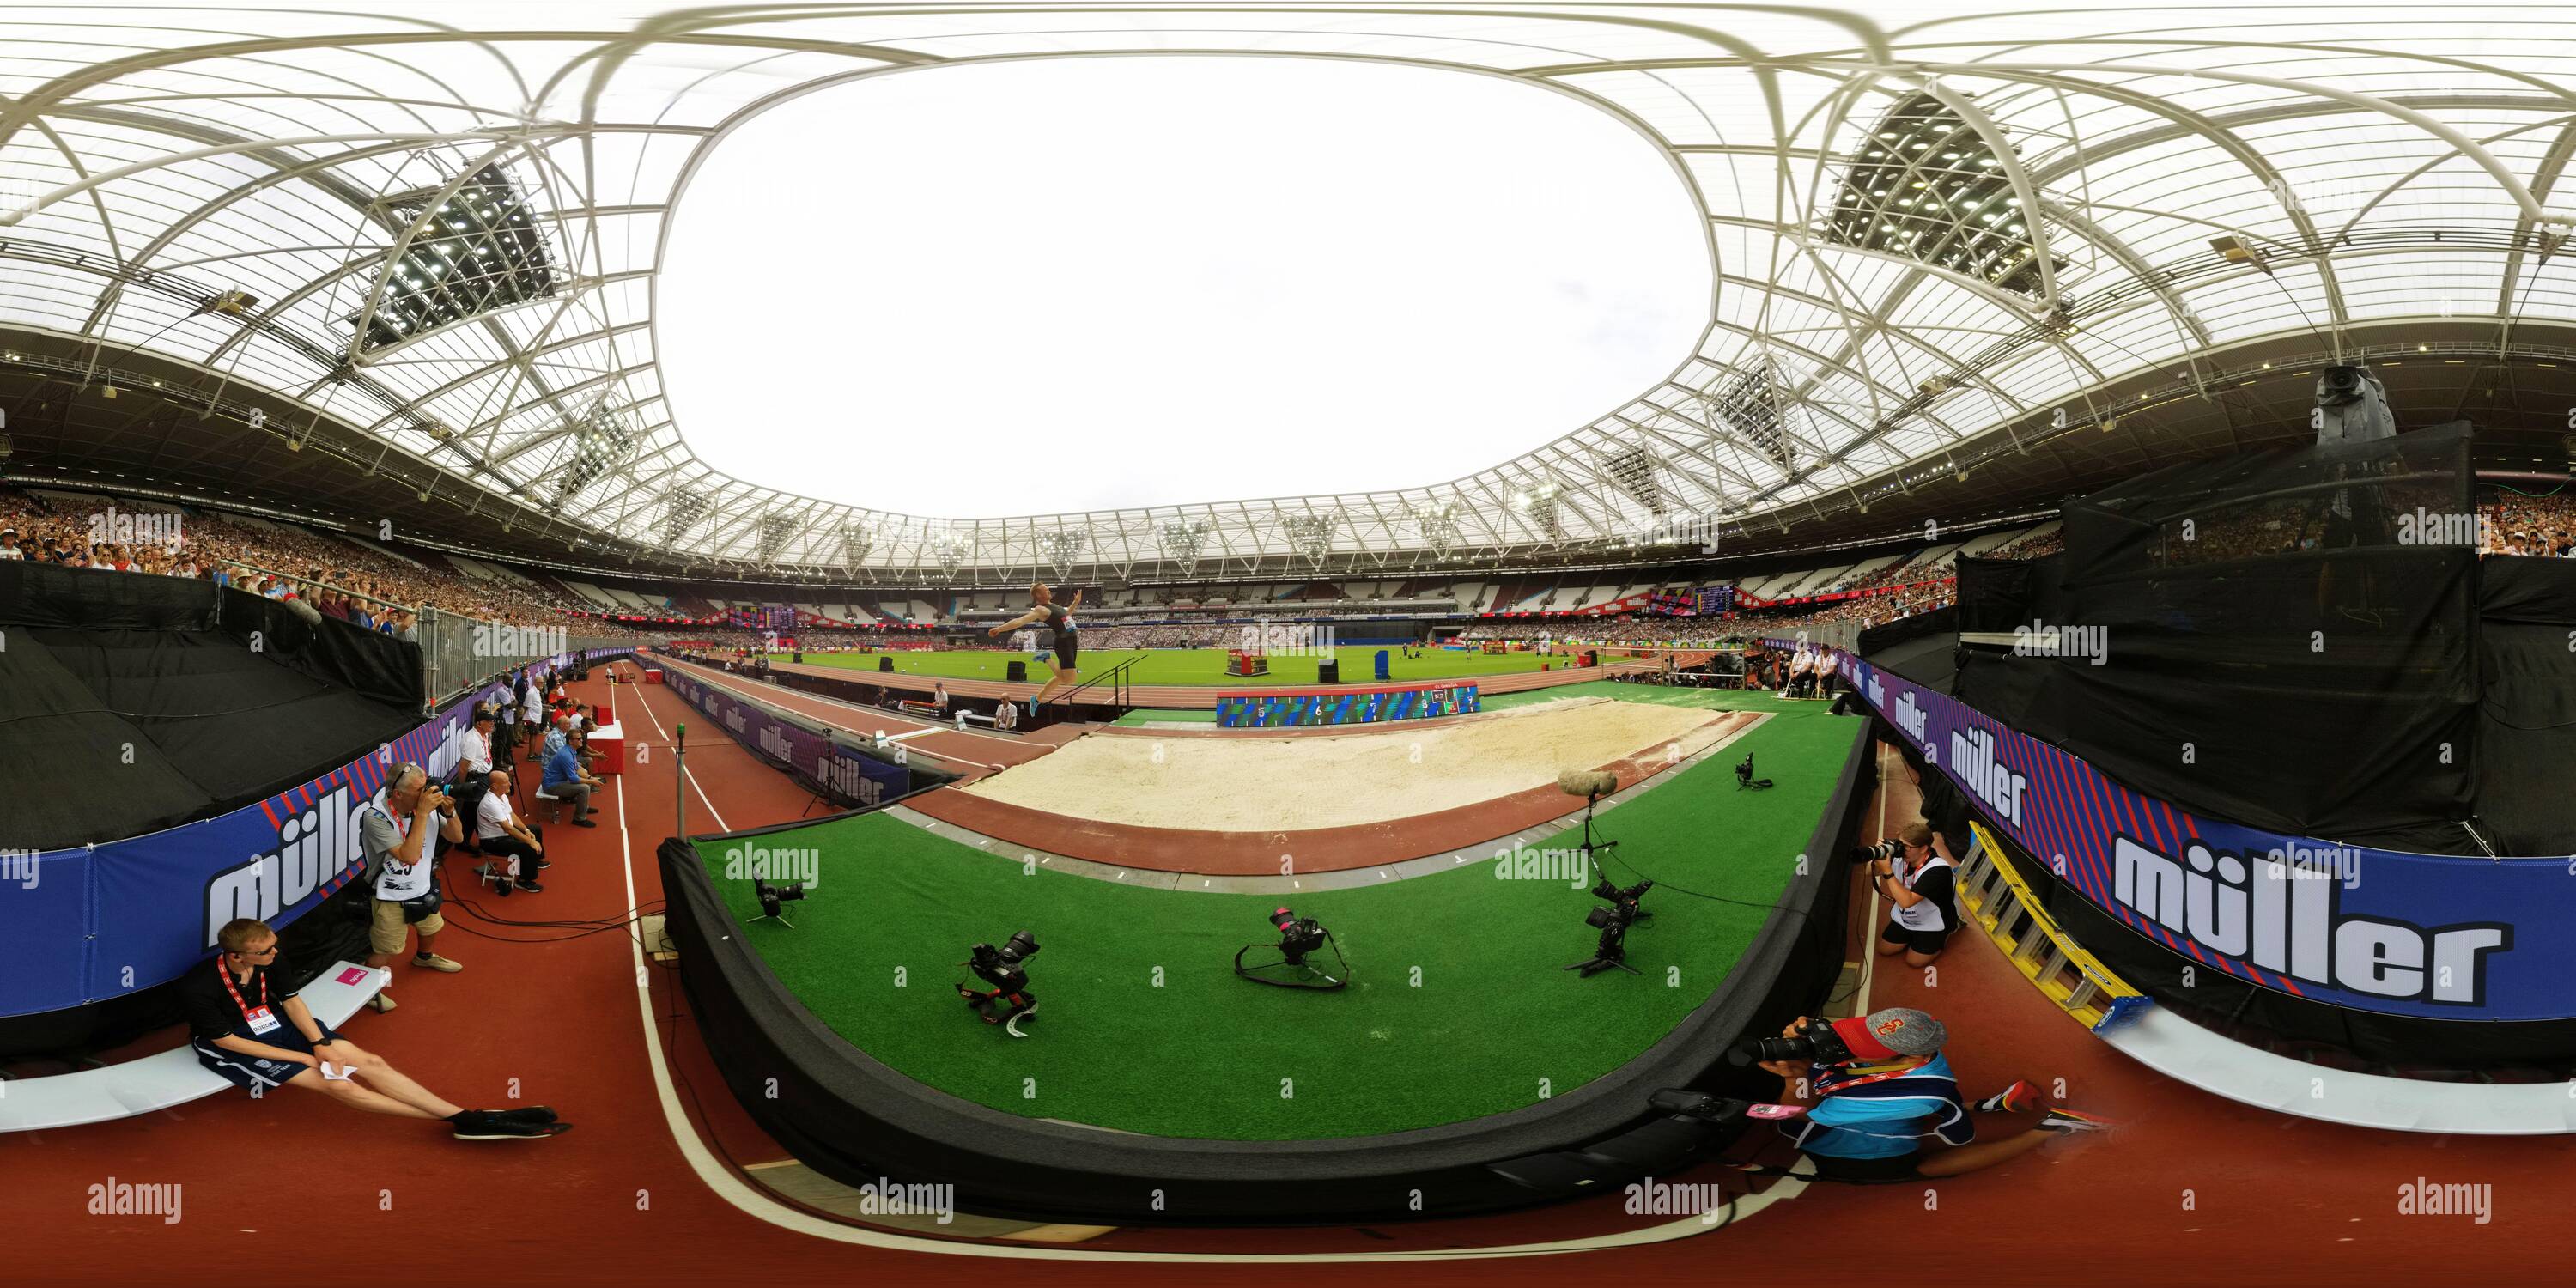 360 Grad Panorama Ansicht von Greg Rutherford tritt bei den Muller Anniversary Games in London in seinem letzten Long Jump Wettbewerb an. Bild : Mark Pain / Alamy